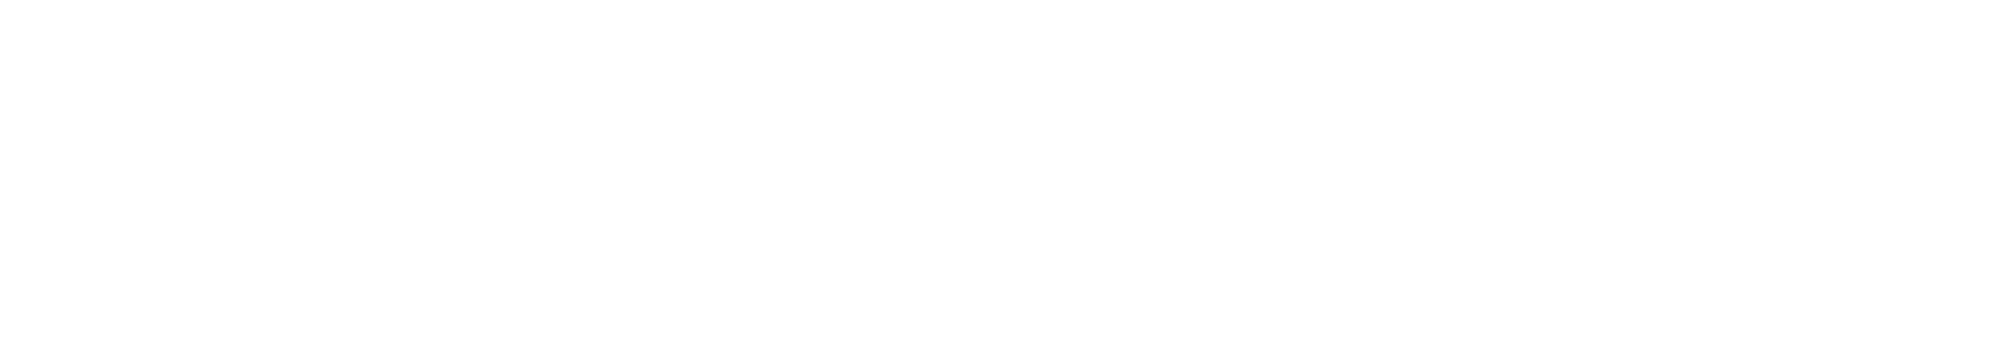 ZBW – Leibniz-Informationszentrum Wirtschaft